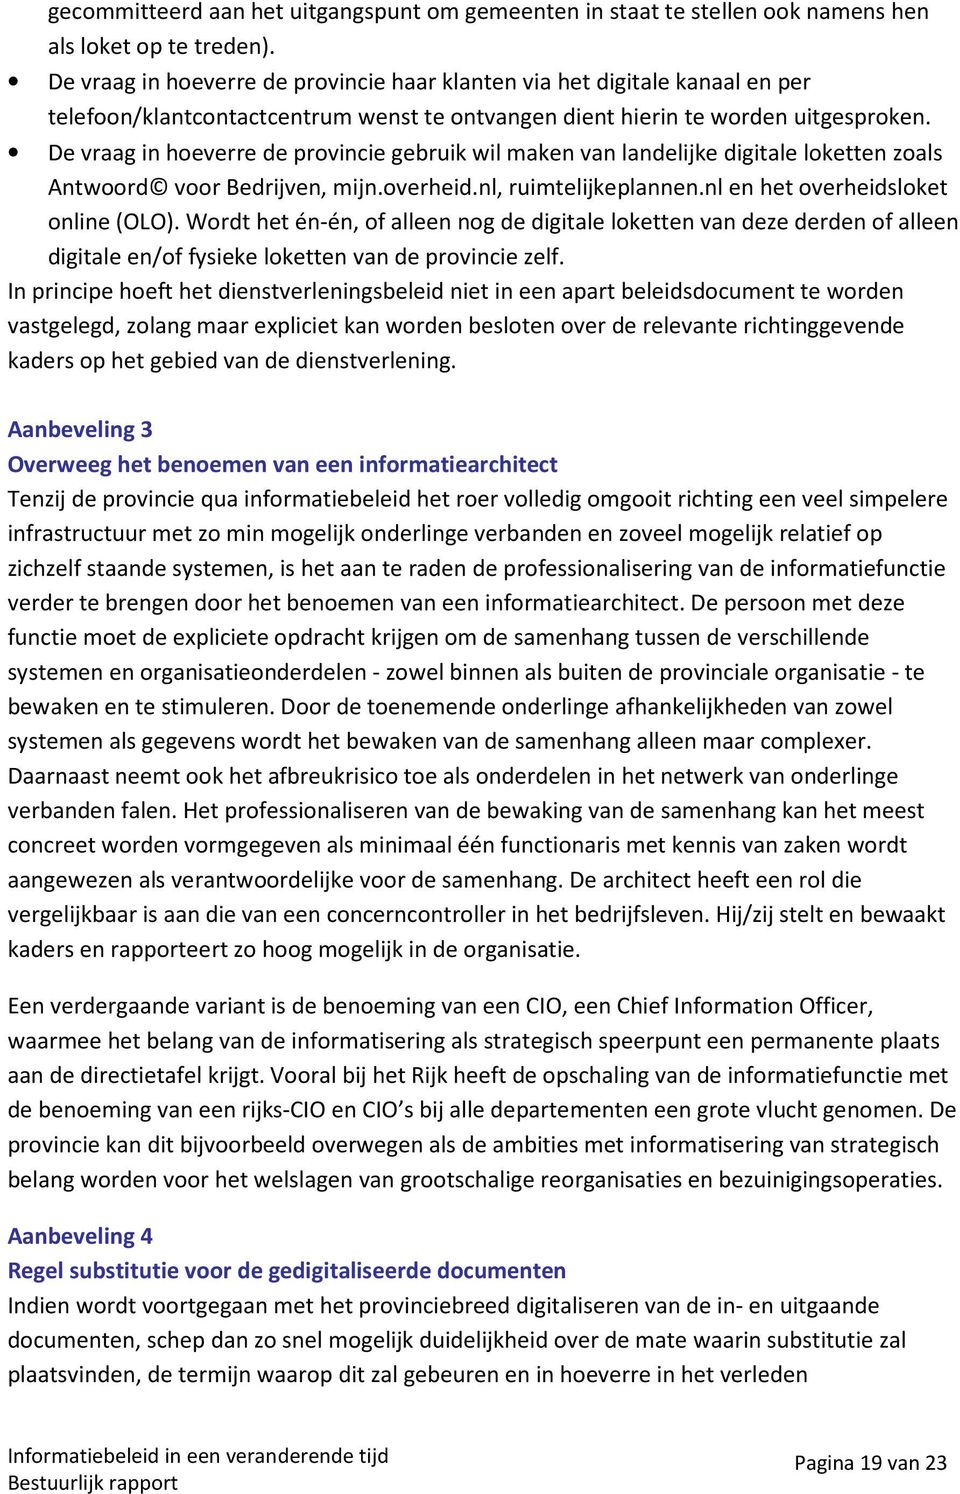 De vraag in hoeverre de provincie gebruik wil maken van landelijke digitale loketten zoals Antwoord voor Bedrijven, mijn.overheid.nl, ruimtelijkeplannen.nl en het overheidsloket online (OLO).